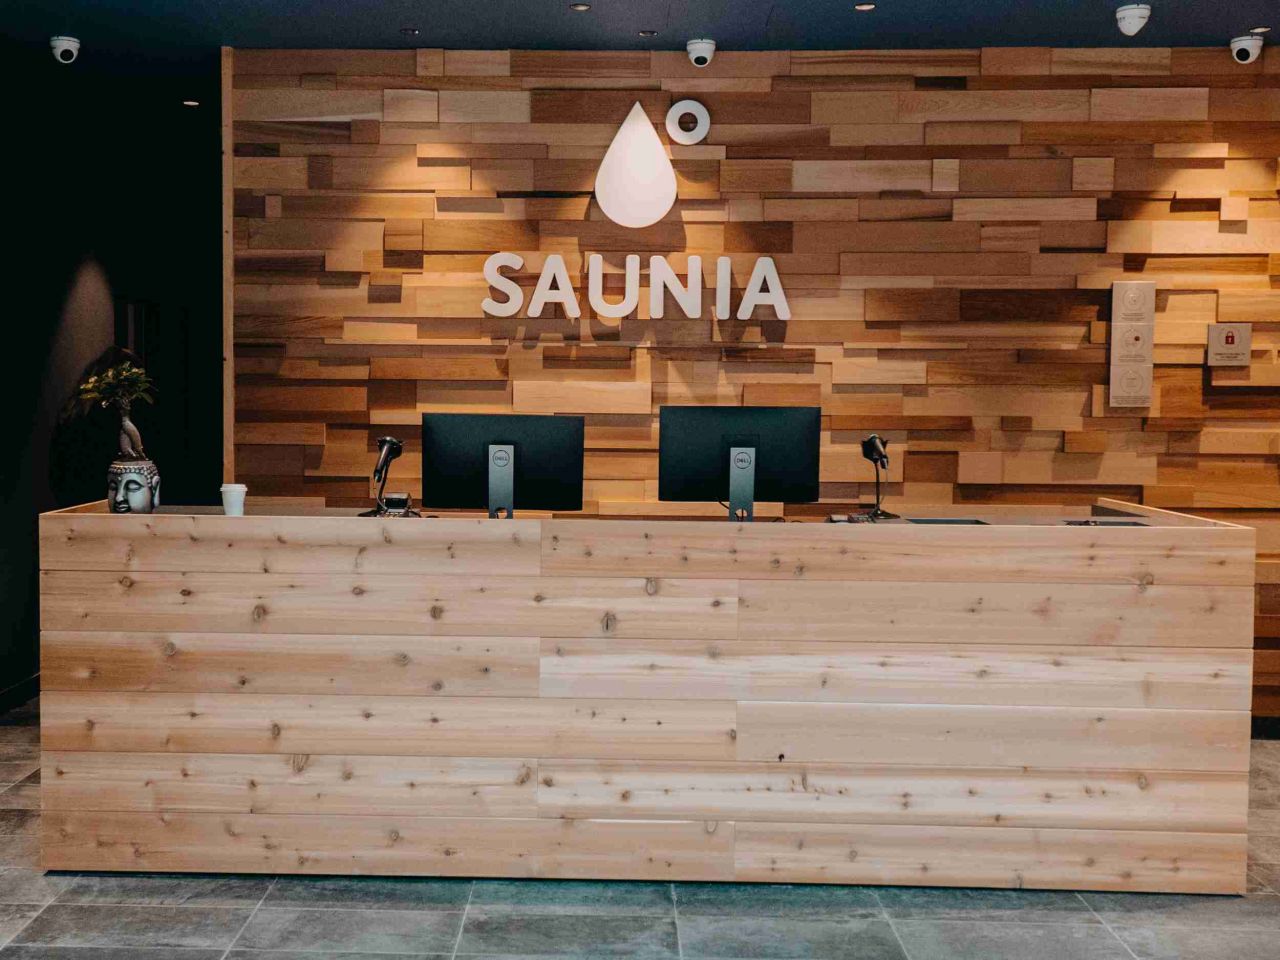 Kladno má svůj první saunový komplex. Saunia v OC Central Kladno nabízí celkem pět druhů saun